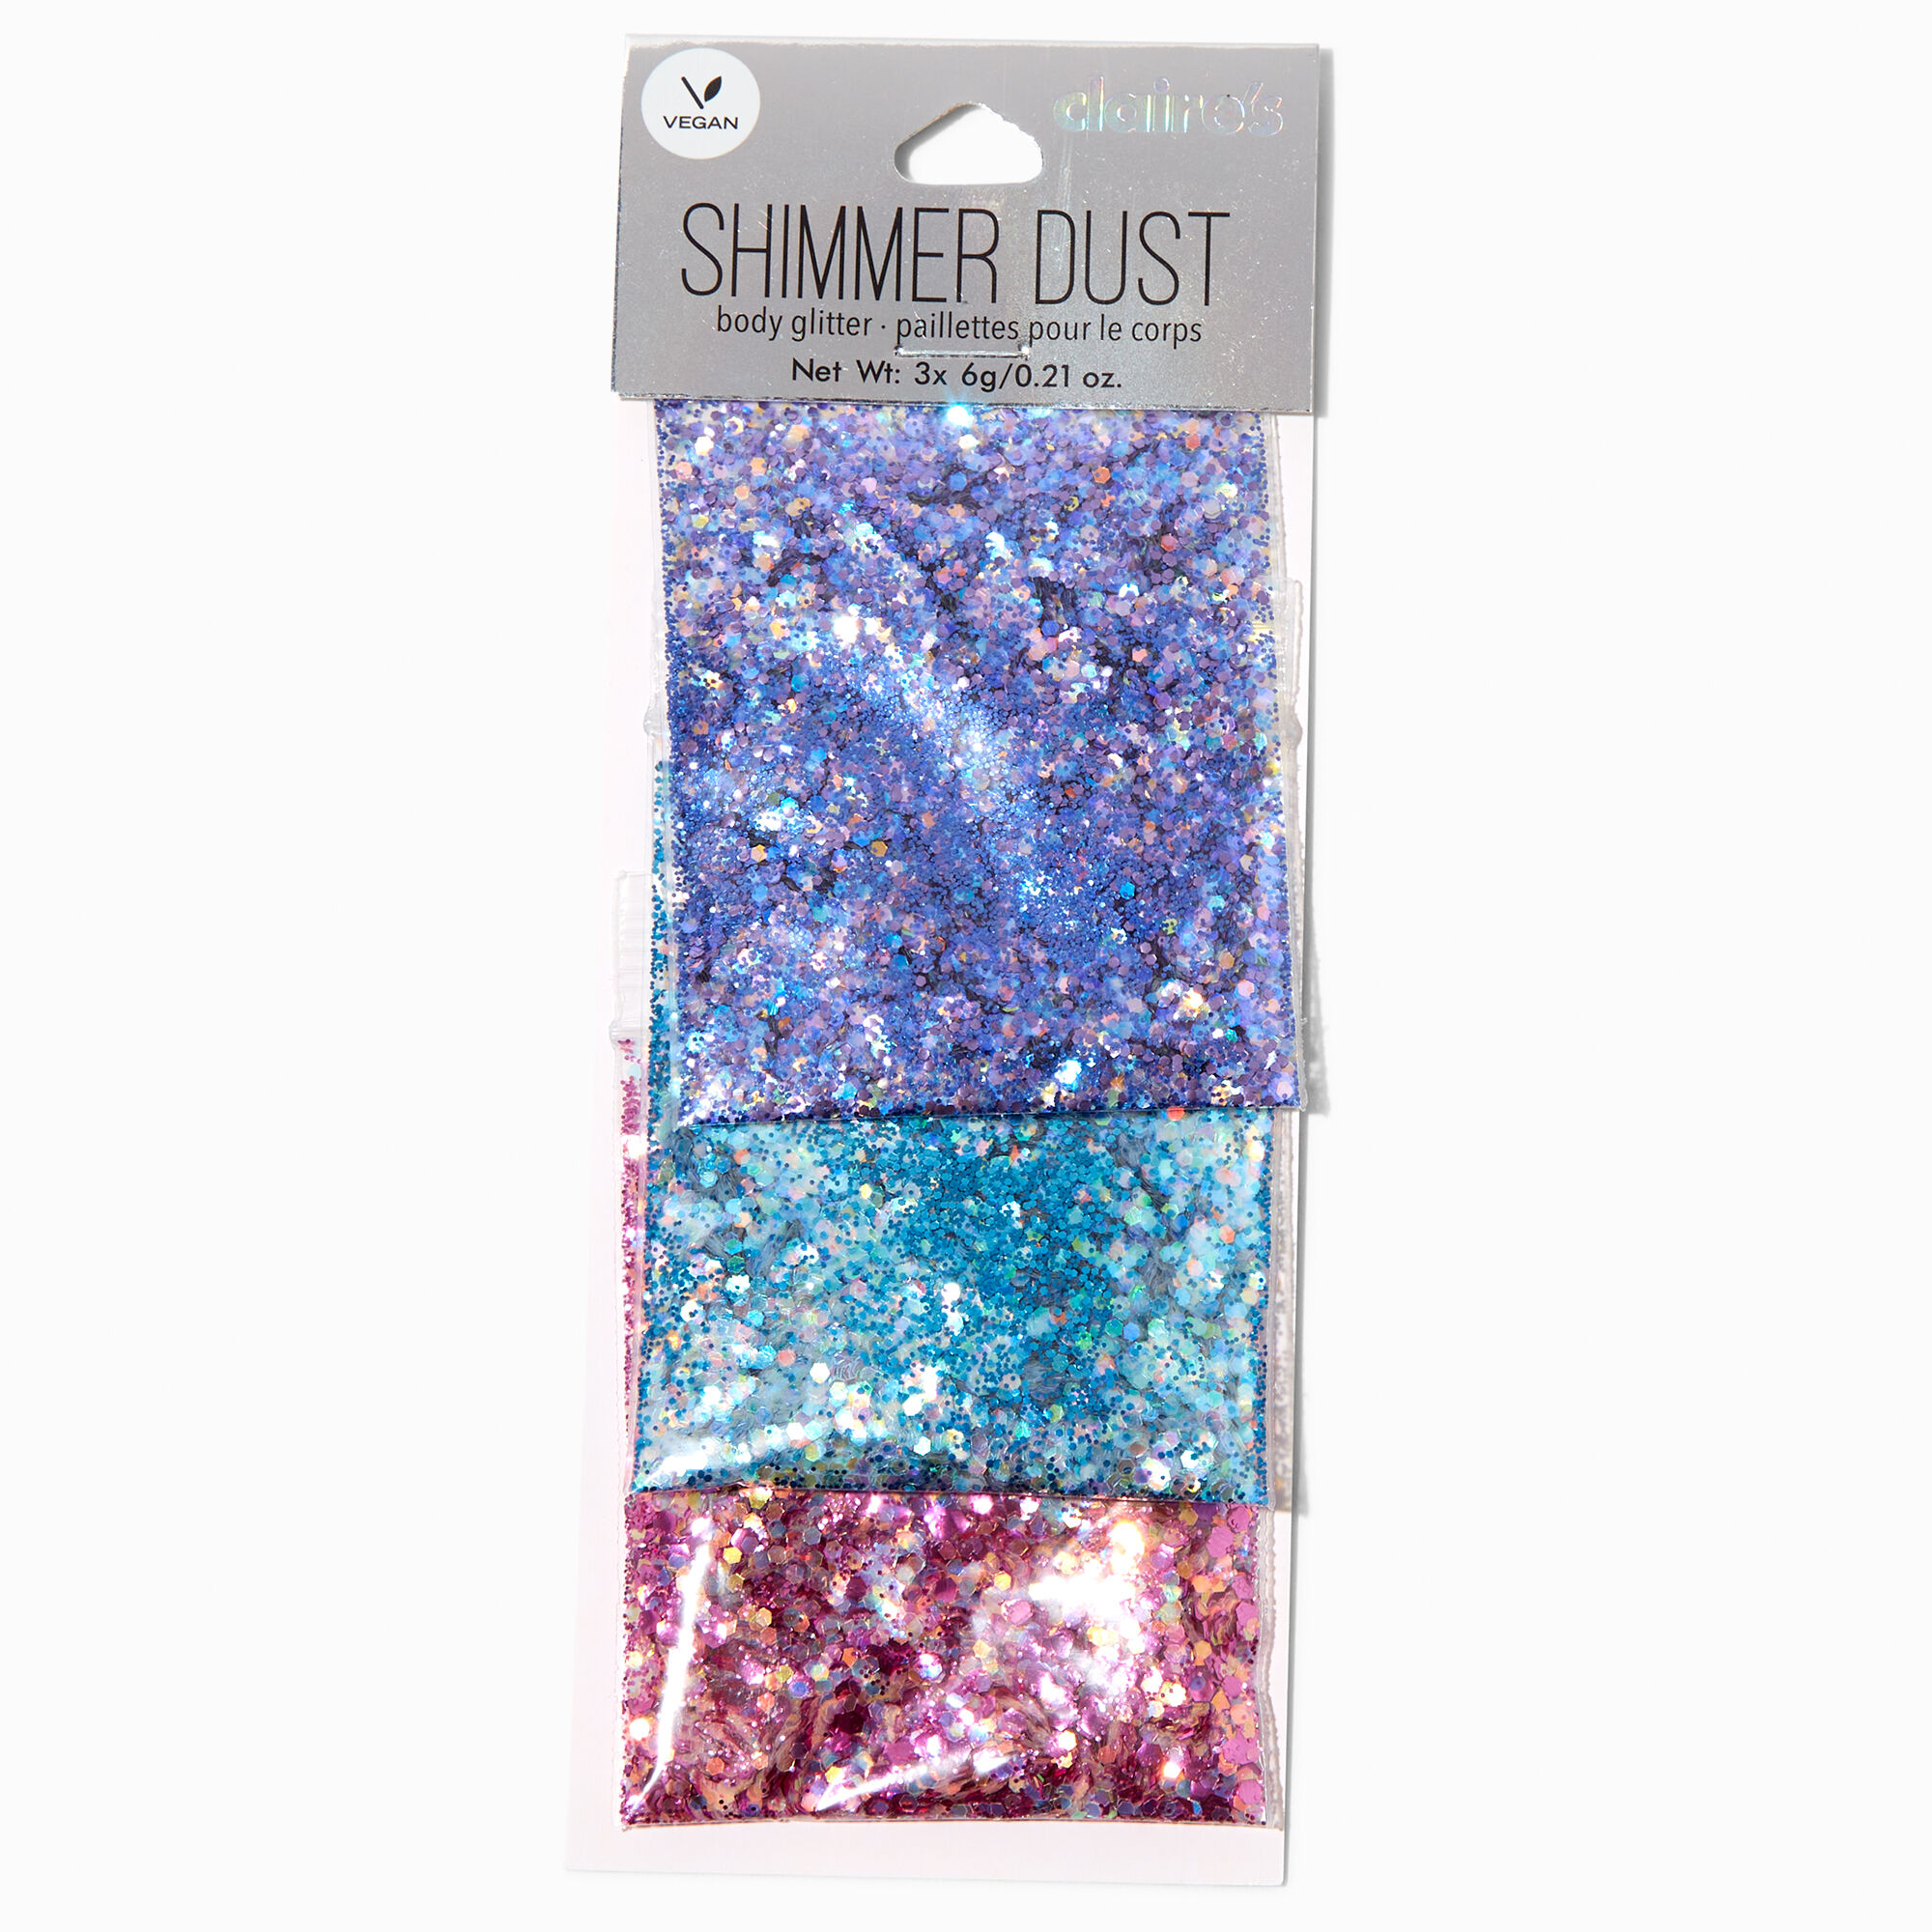 Bright Shimmer Dust Vegan Body Glitter - 3 Pack